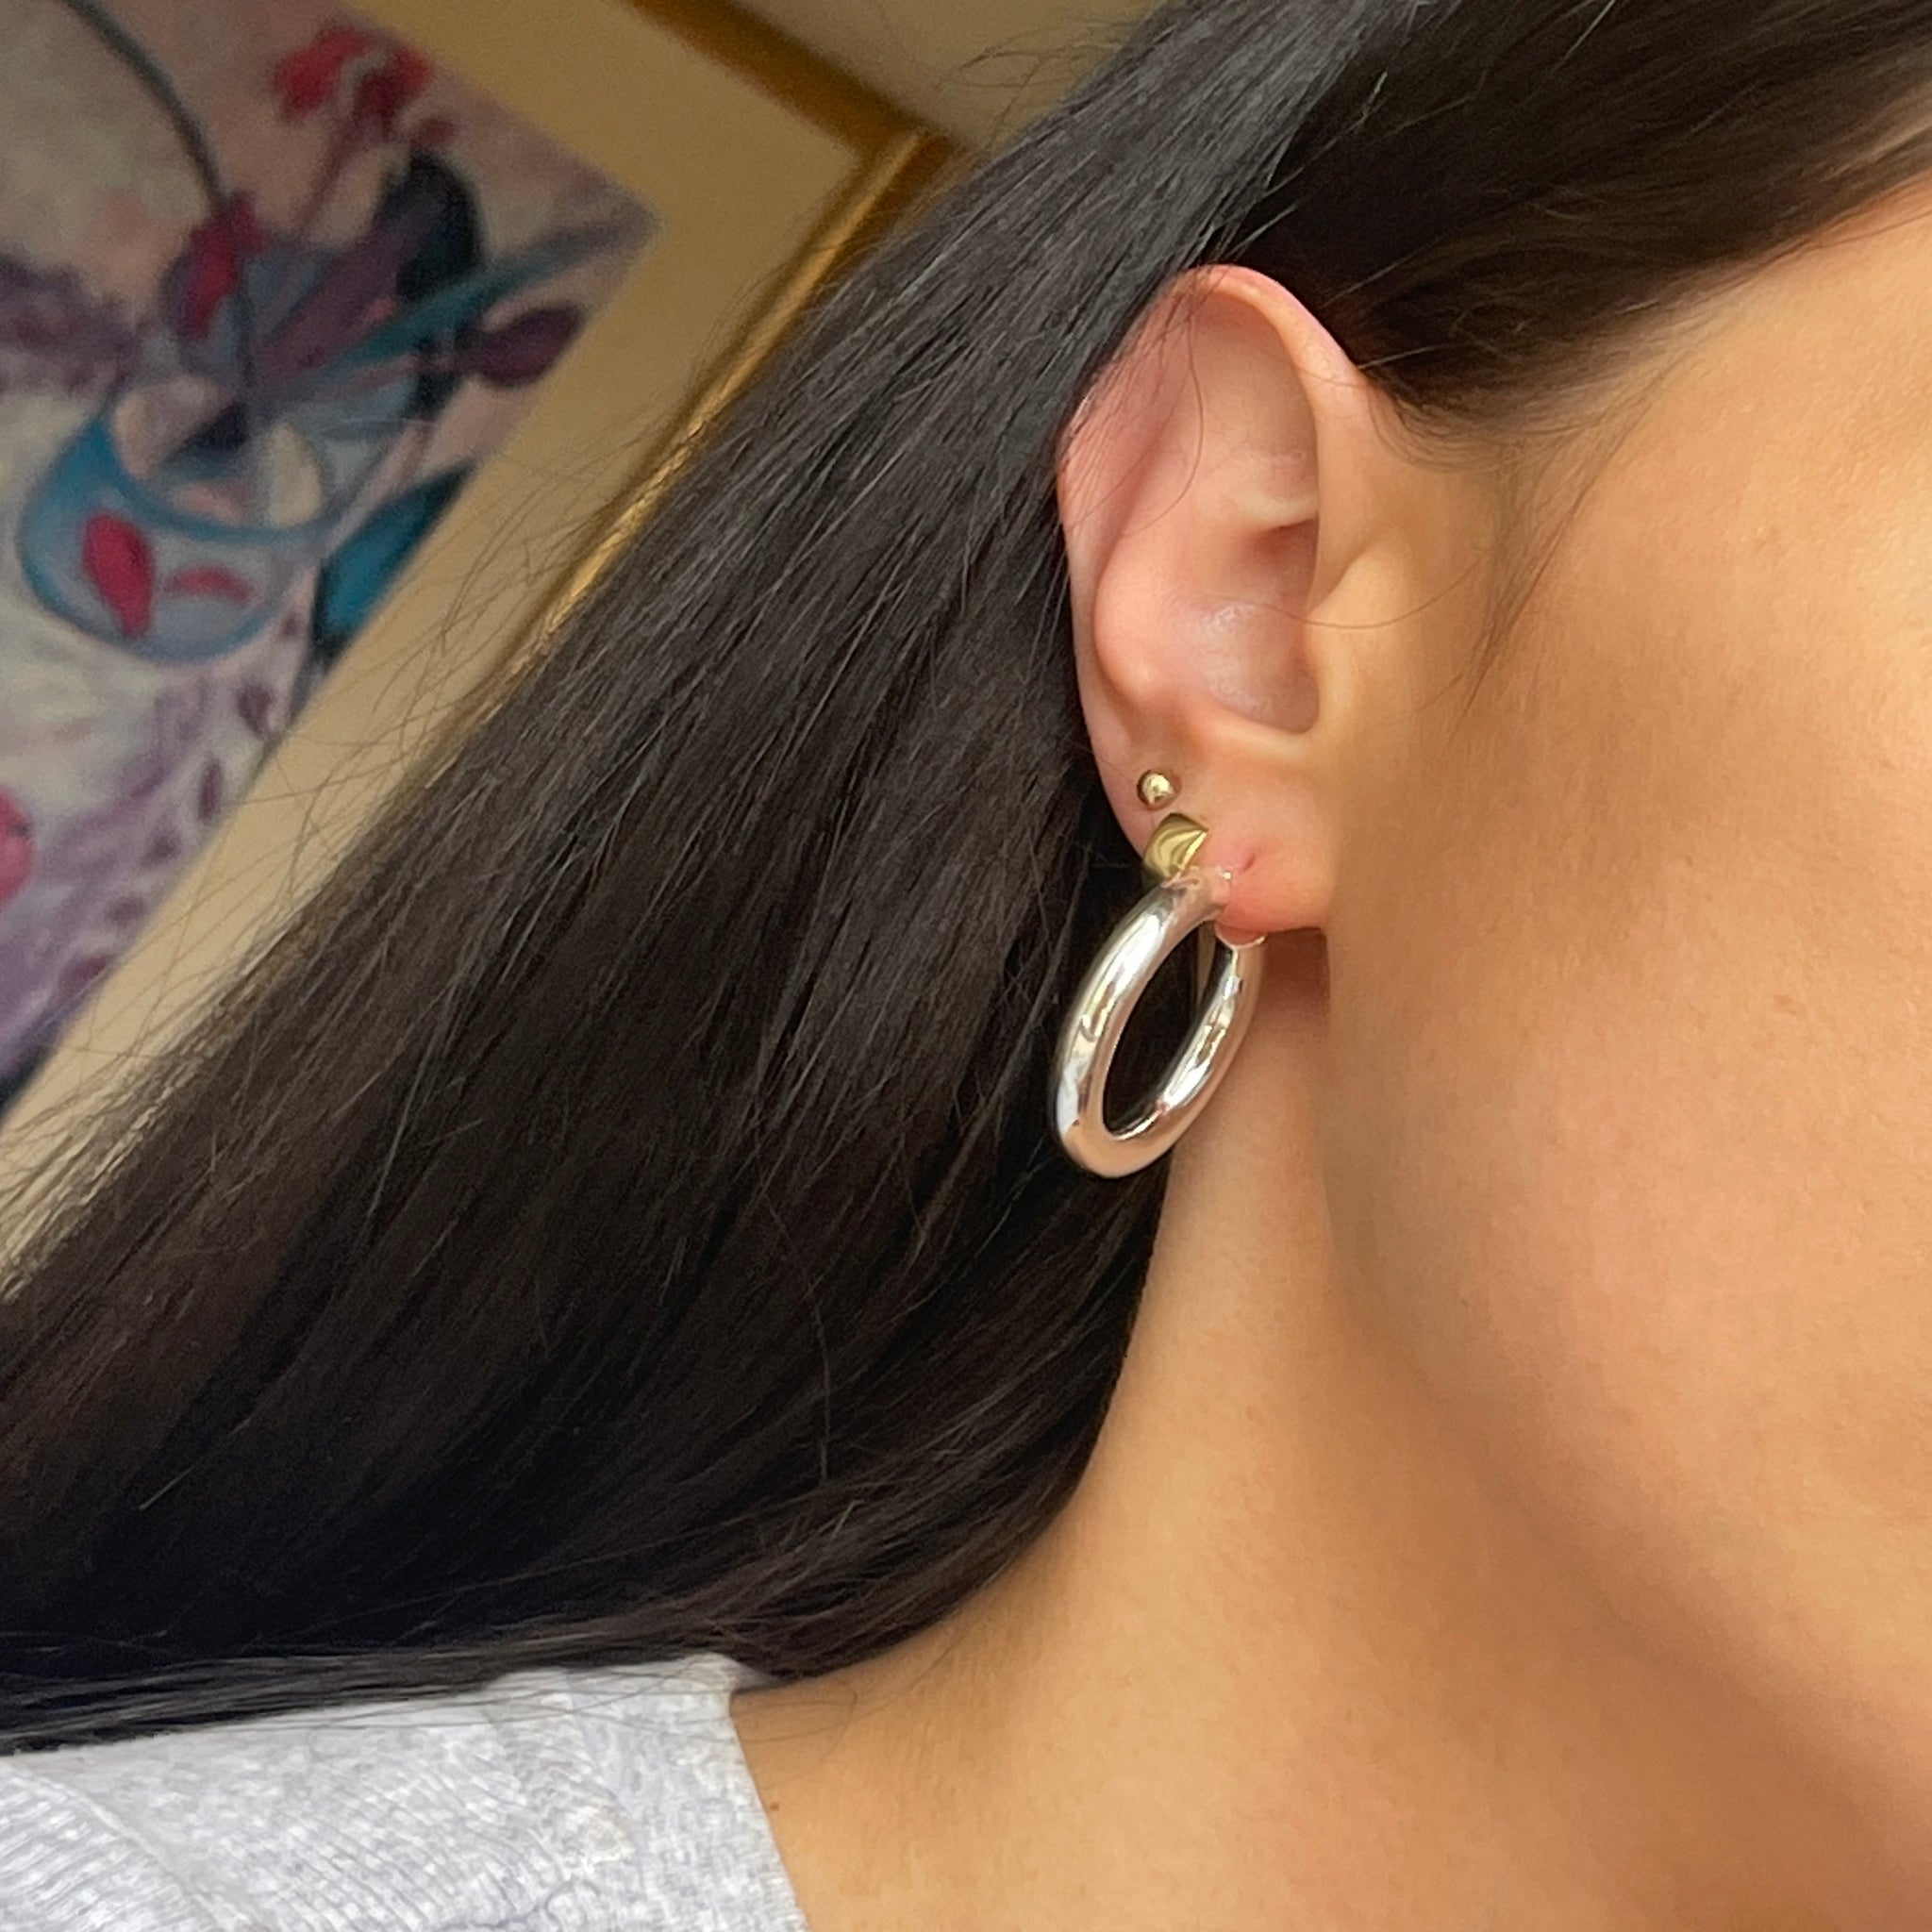 Medium Round Hoop Silver Earrings